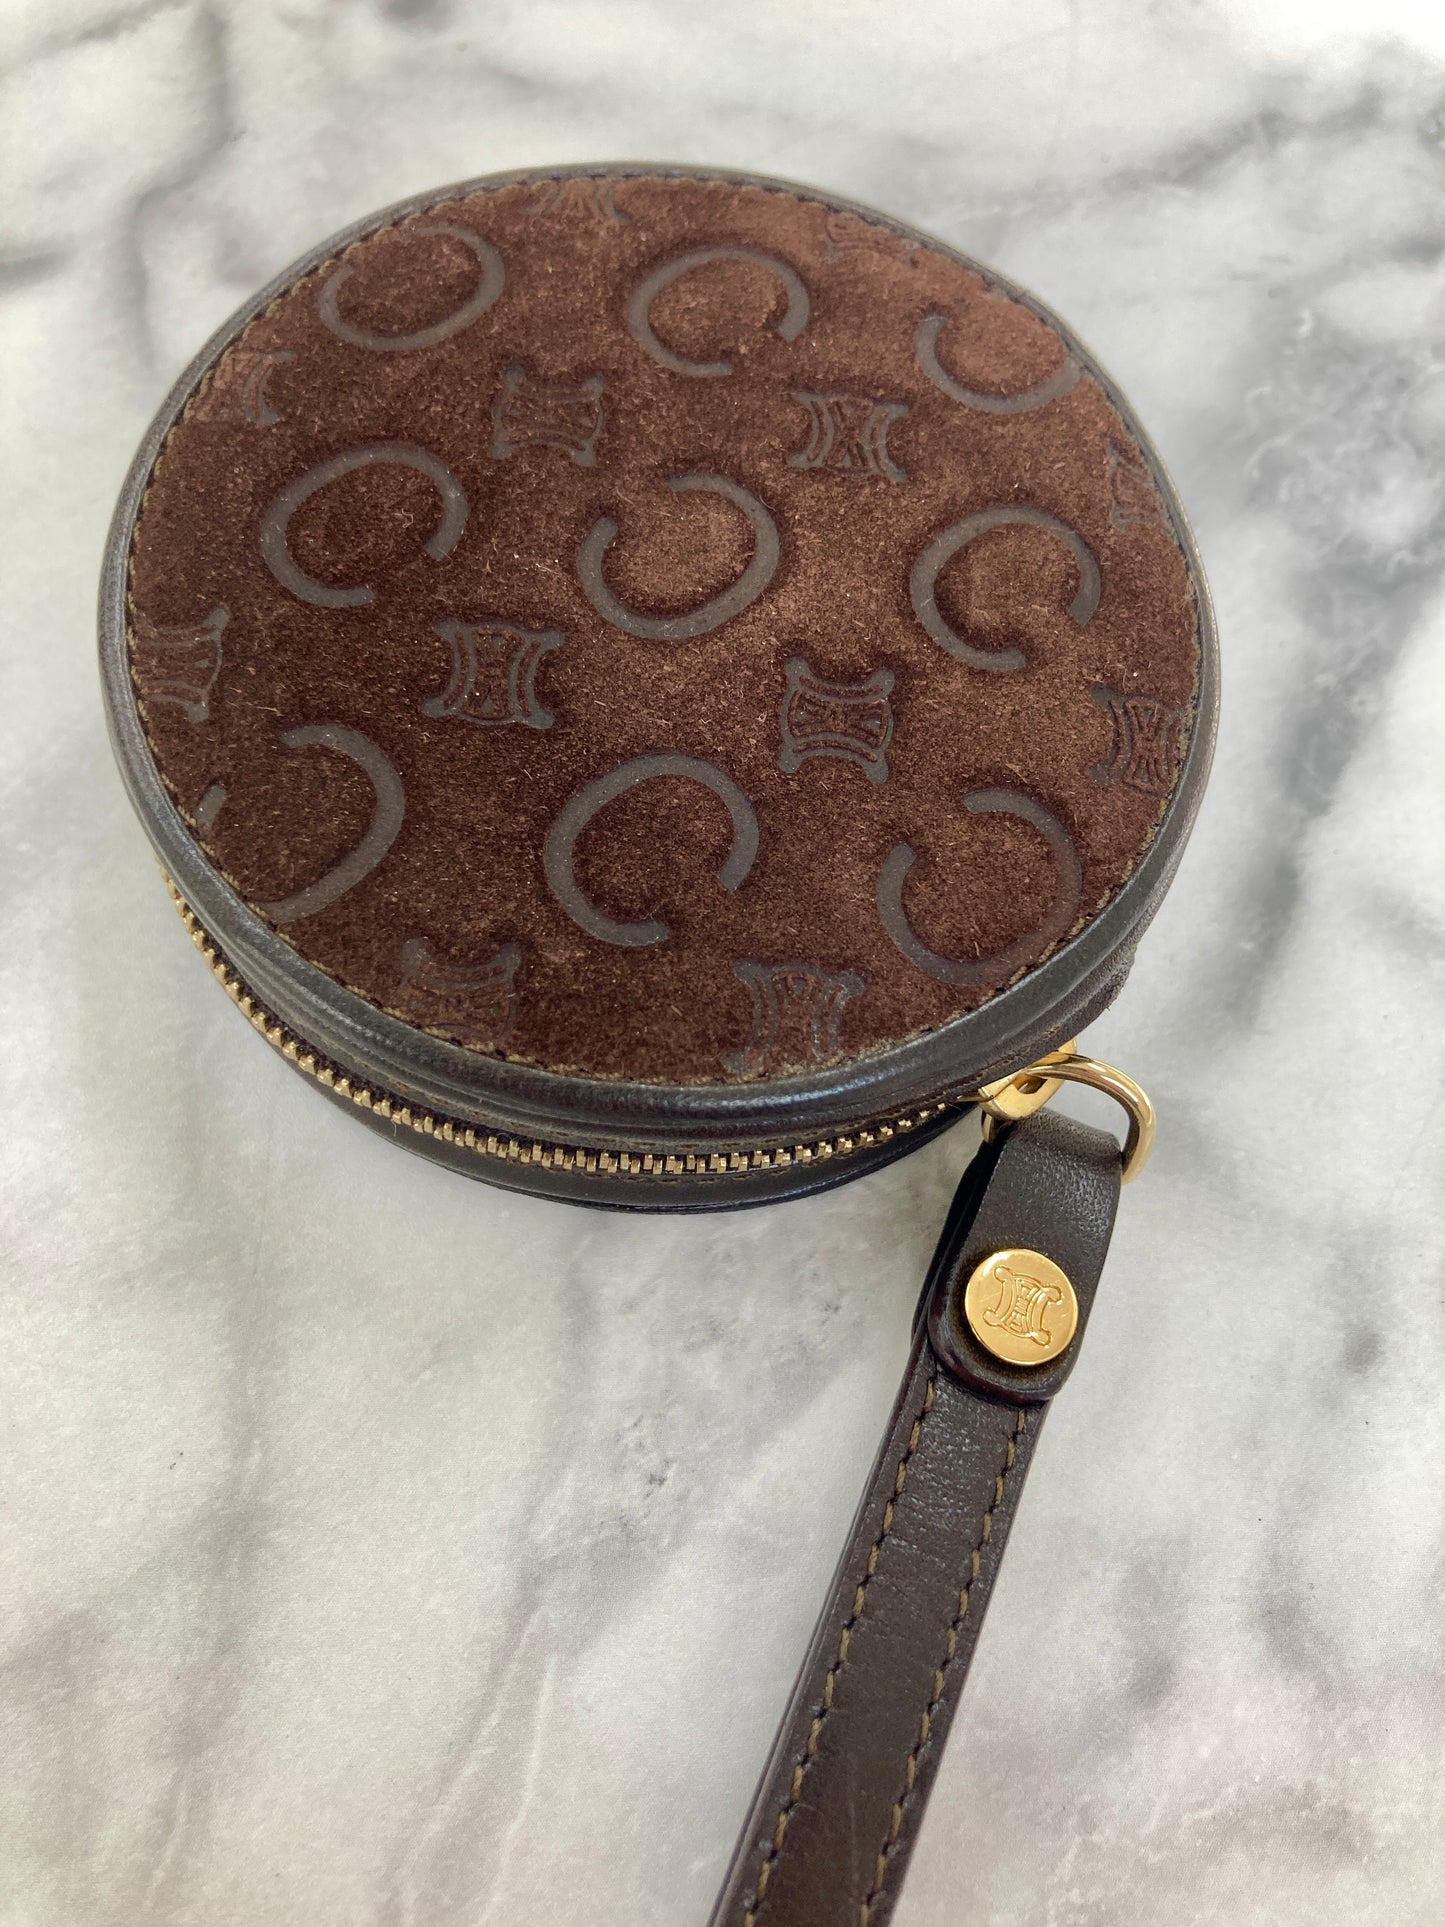 CELINE C-Macadam Blason Suede Leather Round Coin Purse Brown Vintage 6z2vft